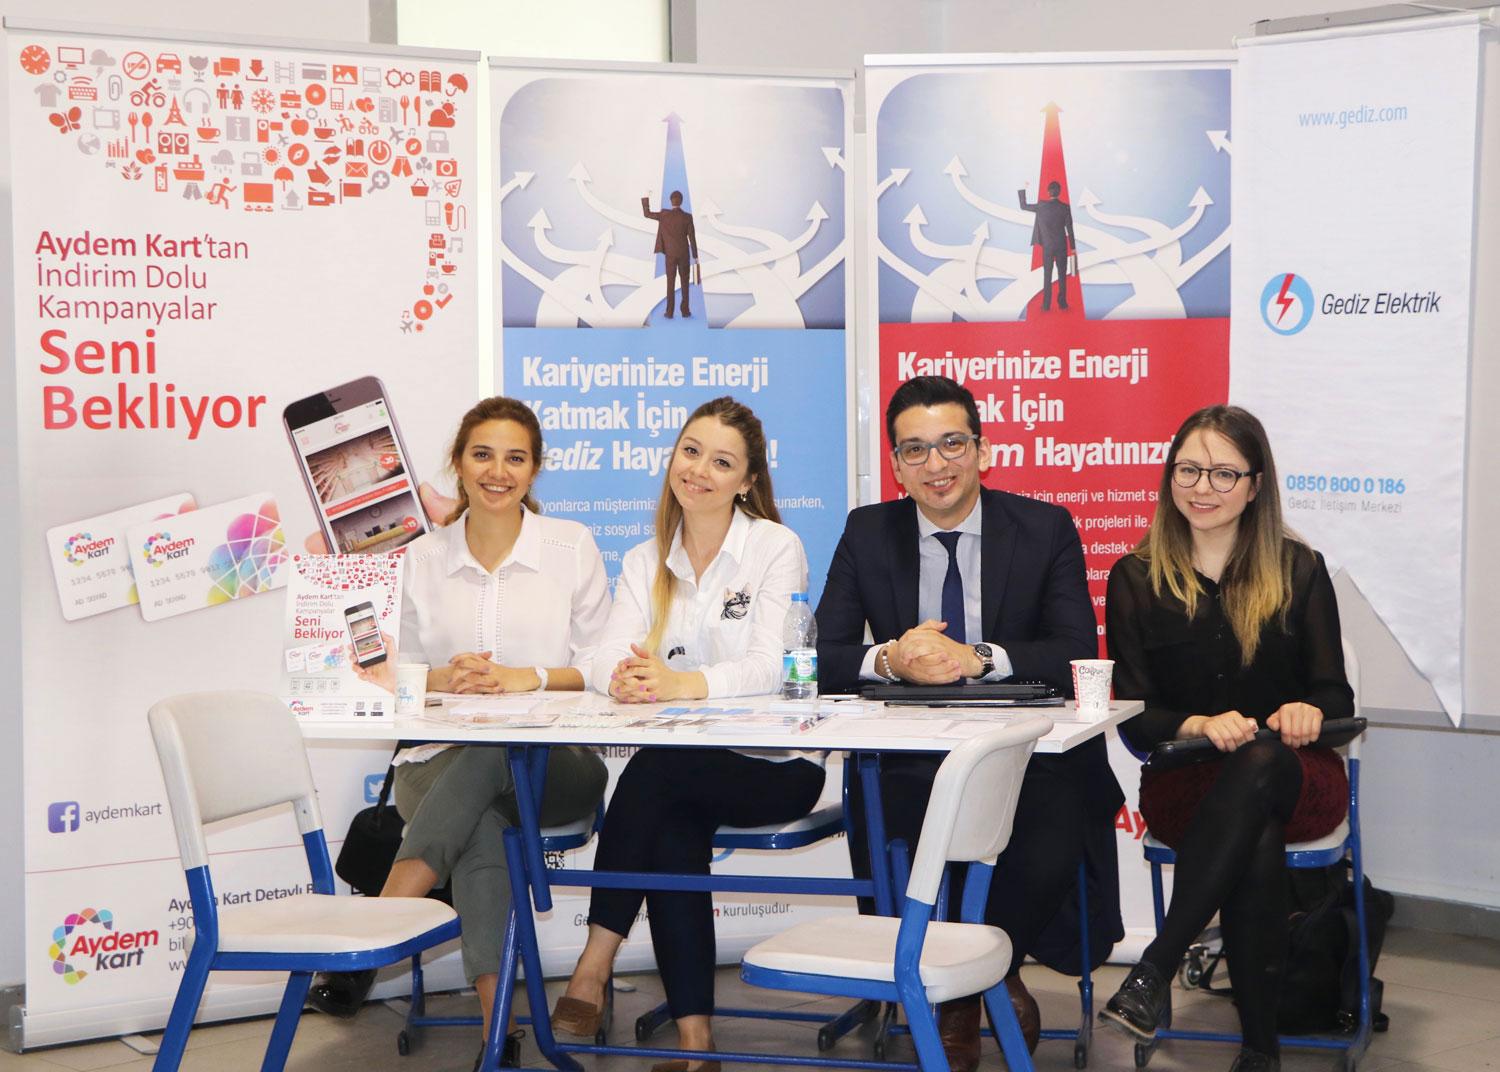  Aydem Gets Together with Students from Dokuz Eylül University at the Career Fair - Dokuzçeşmeler Day 2018 